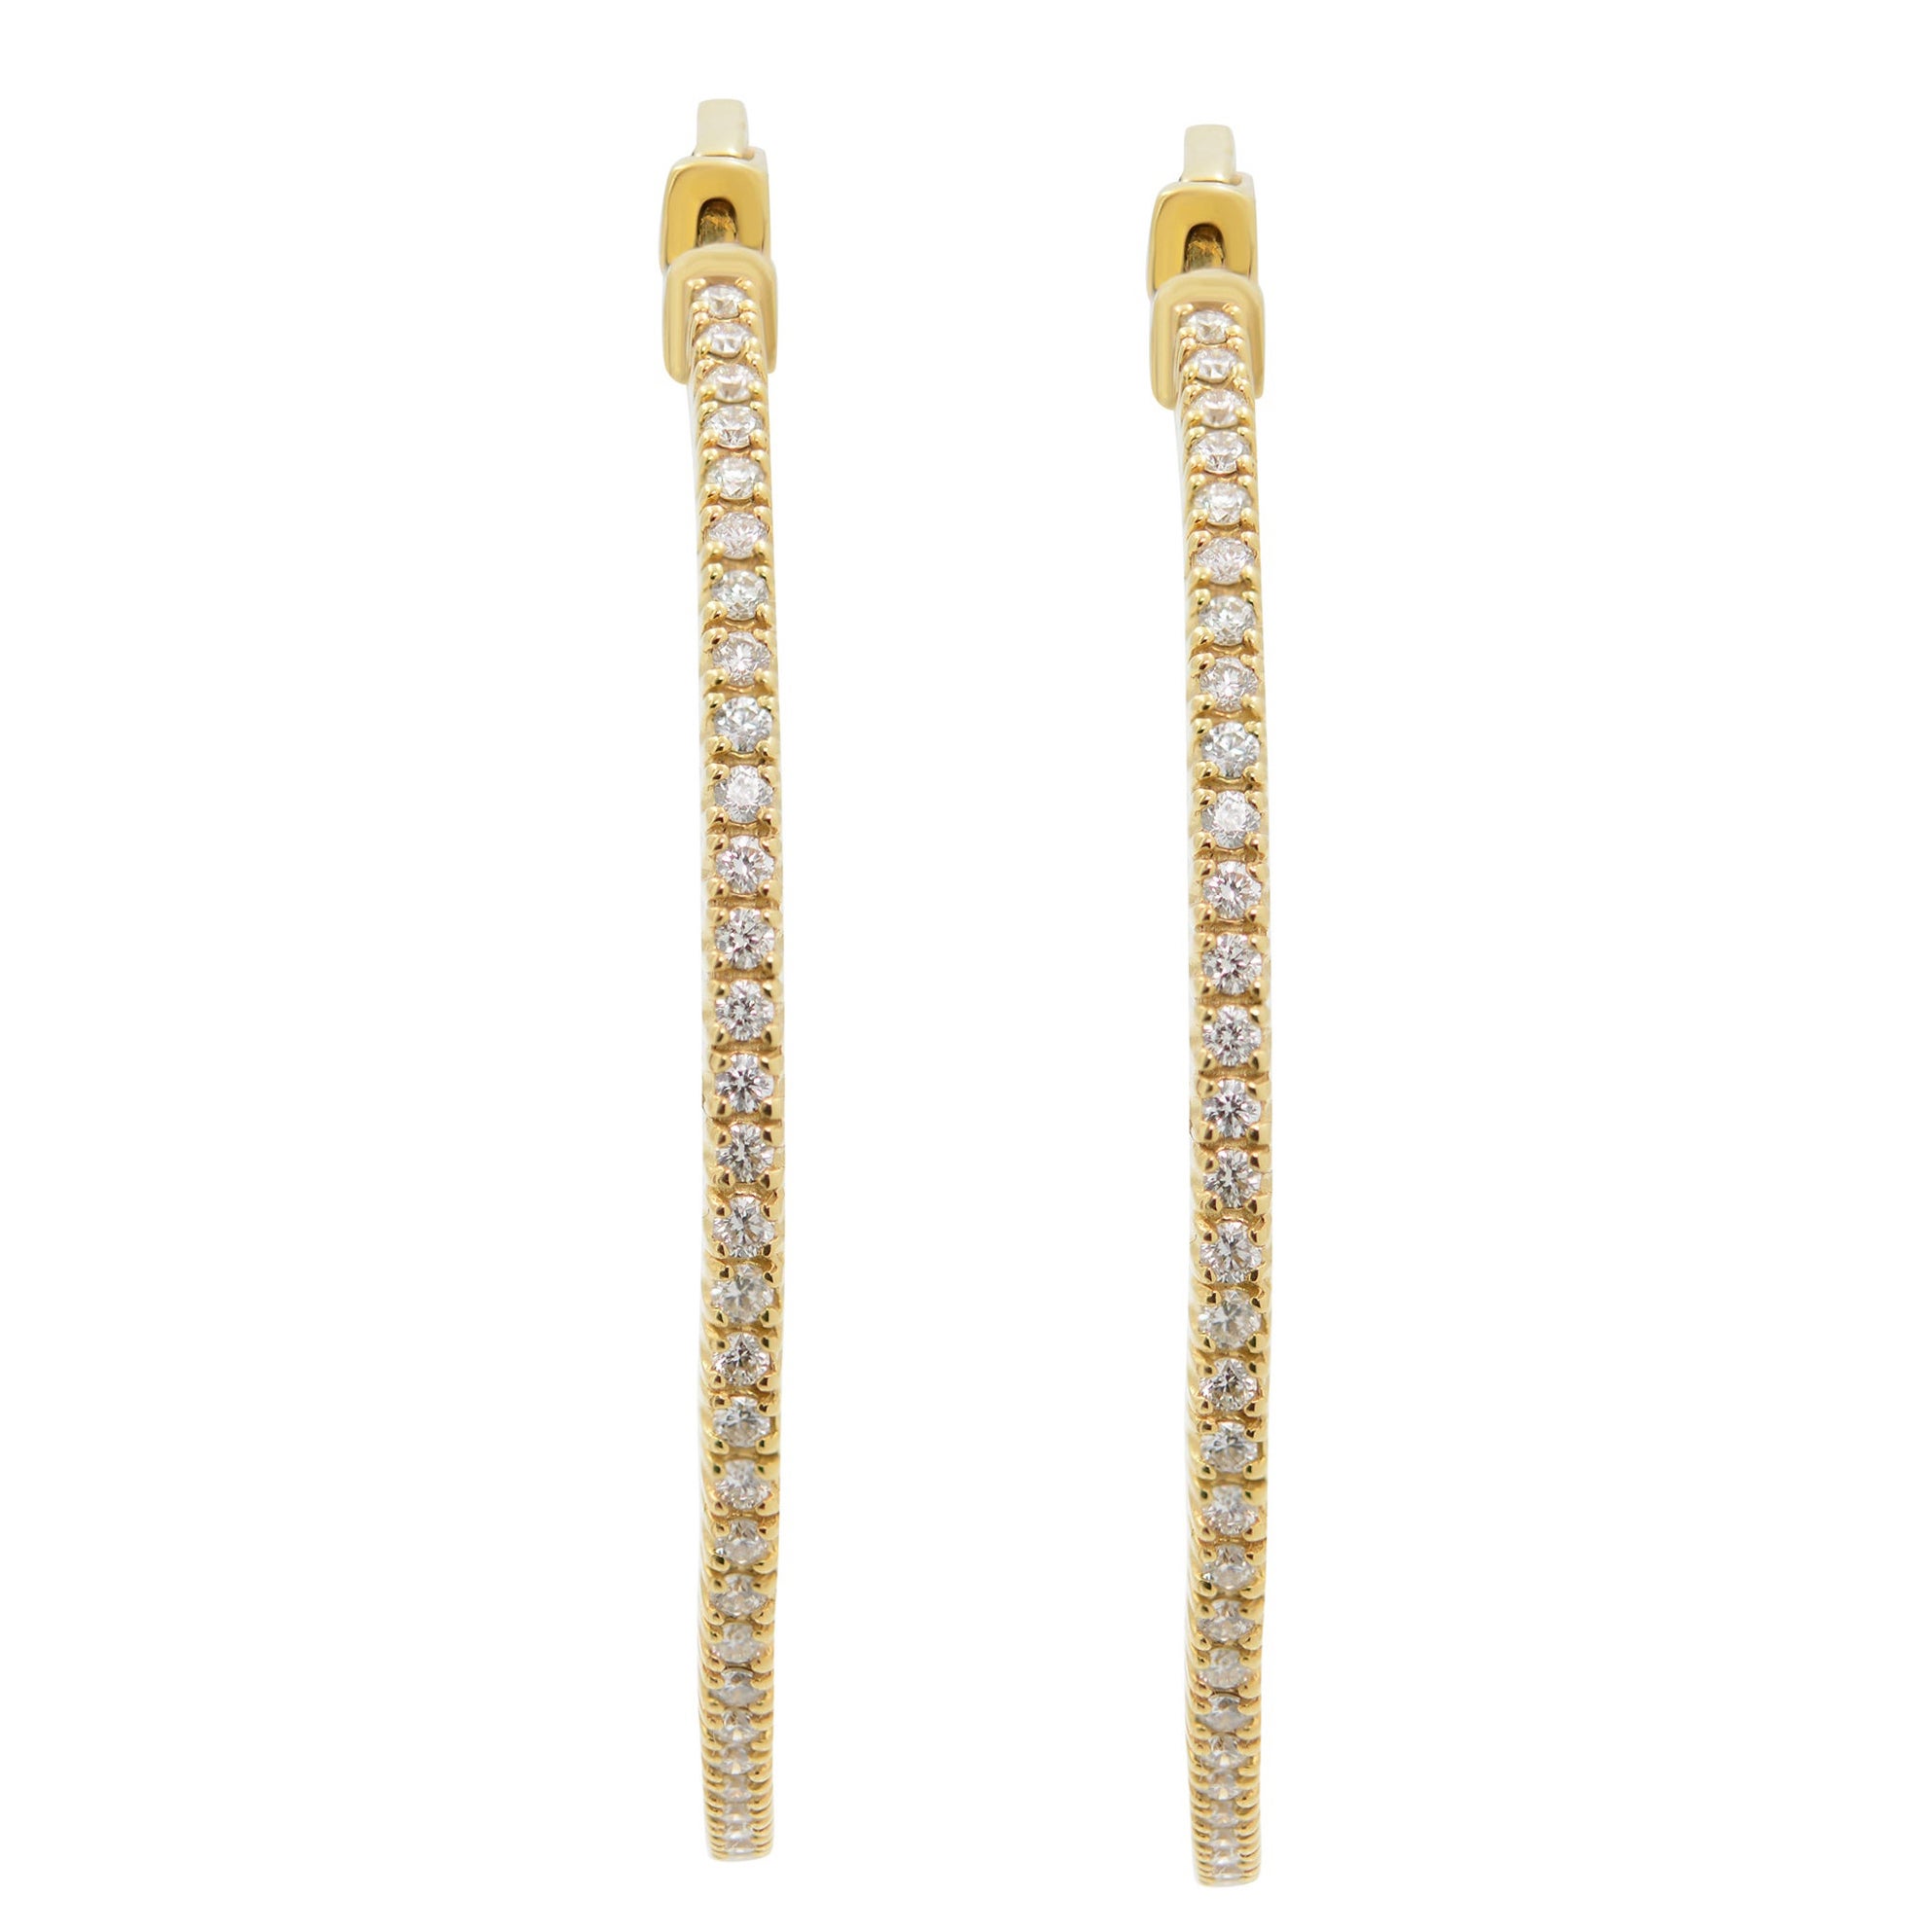 Rachel Koen 14K Yellow Gold Diamond Hoop Earring 2.98cttw